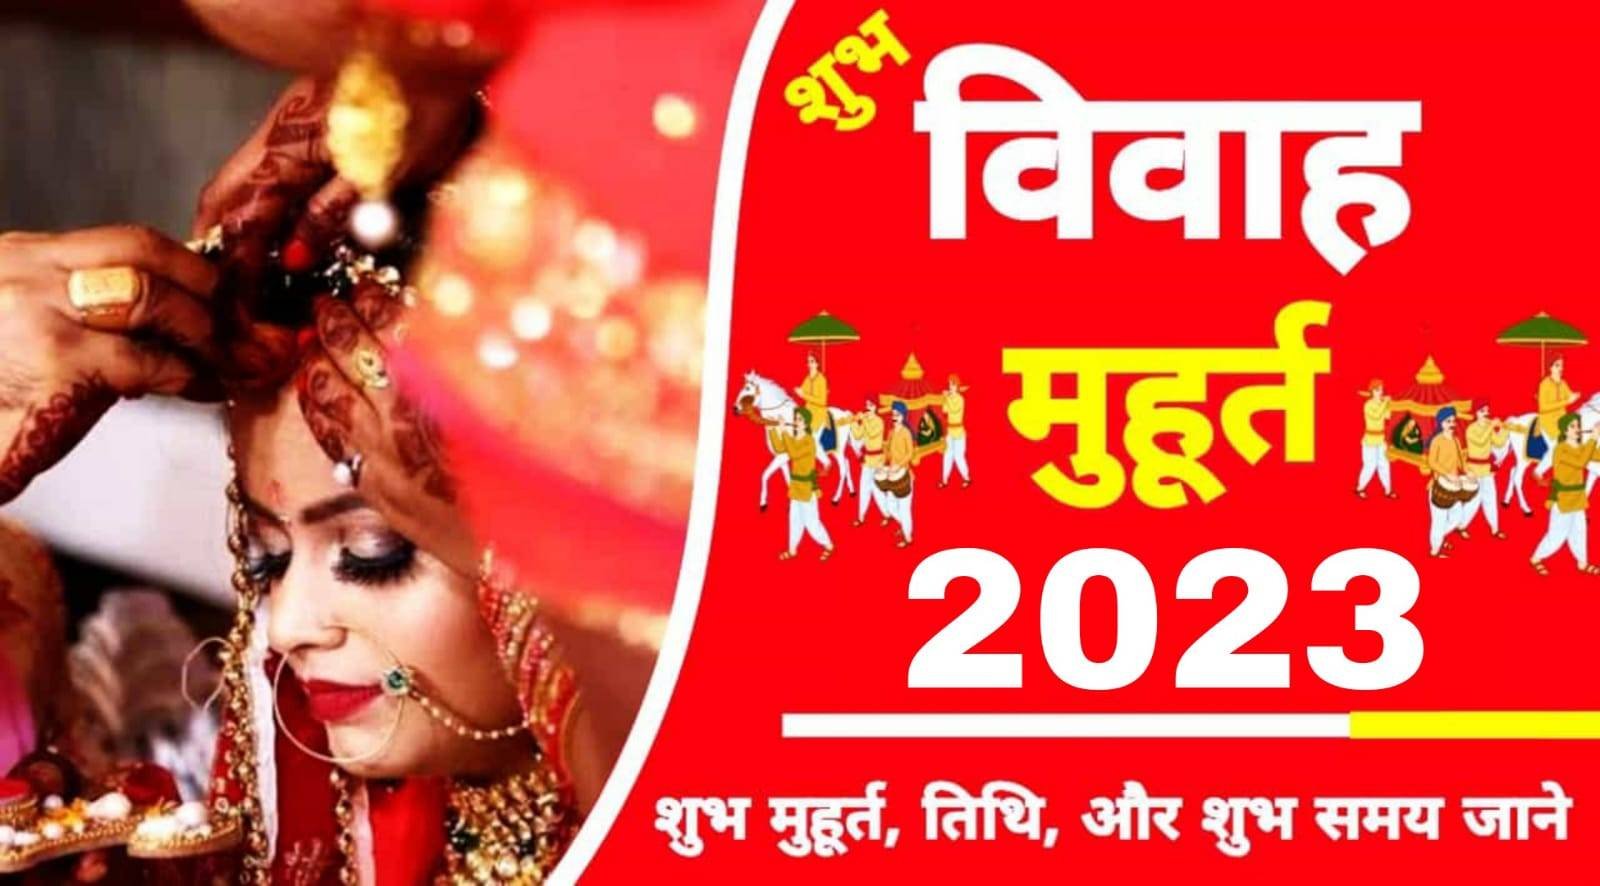 Shubh Vivah Muhurat 2023 साल 2023 में विवाह कराने का शुभ मुहूर्त जानें